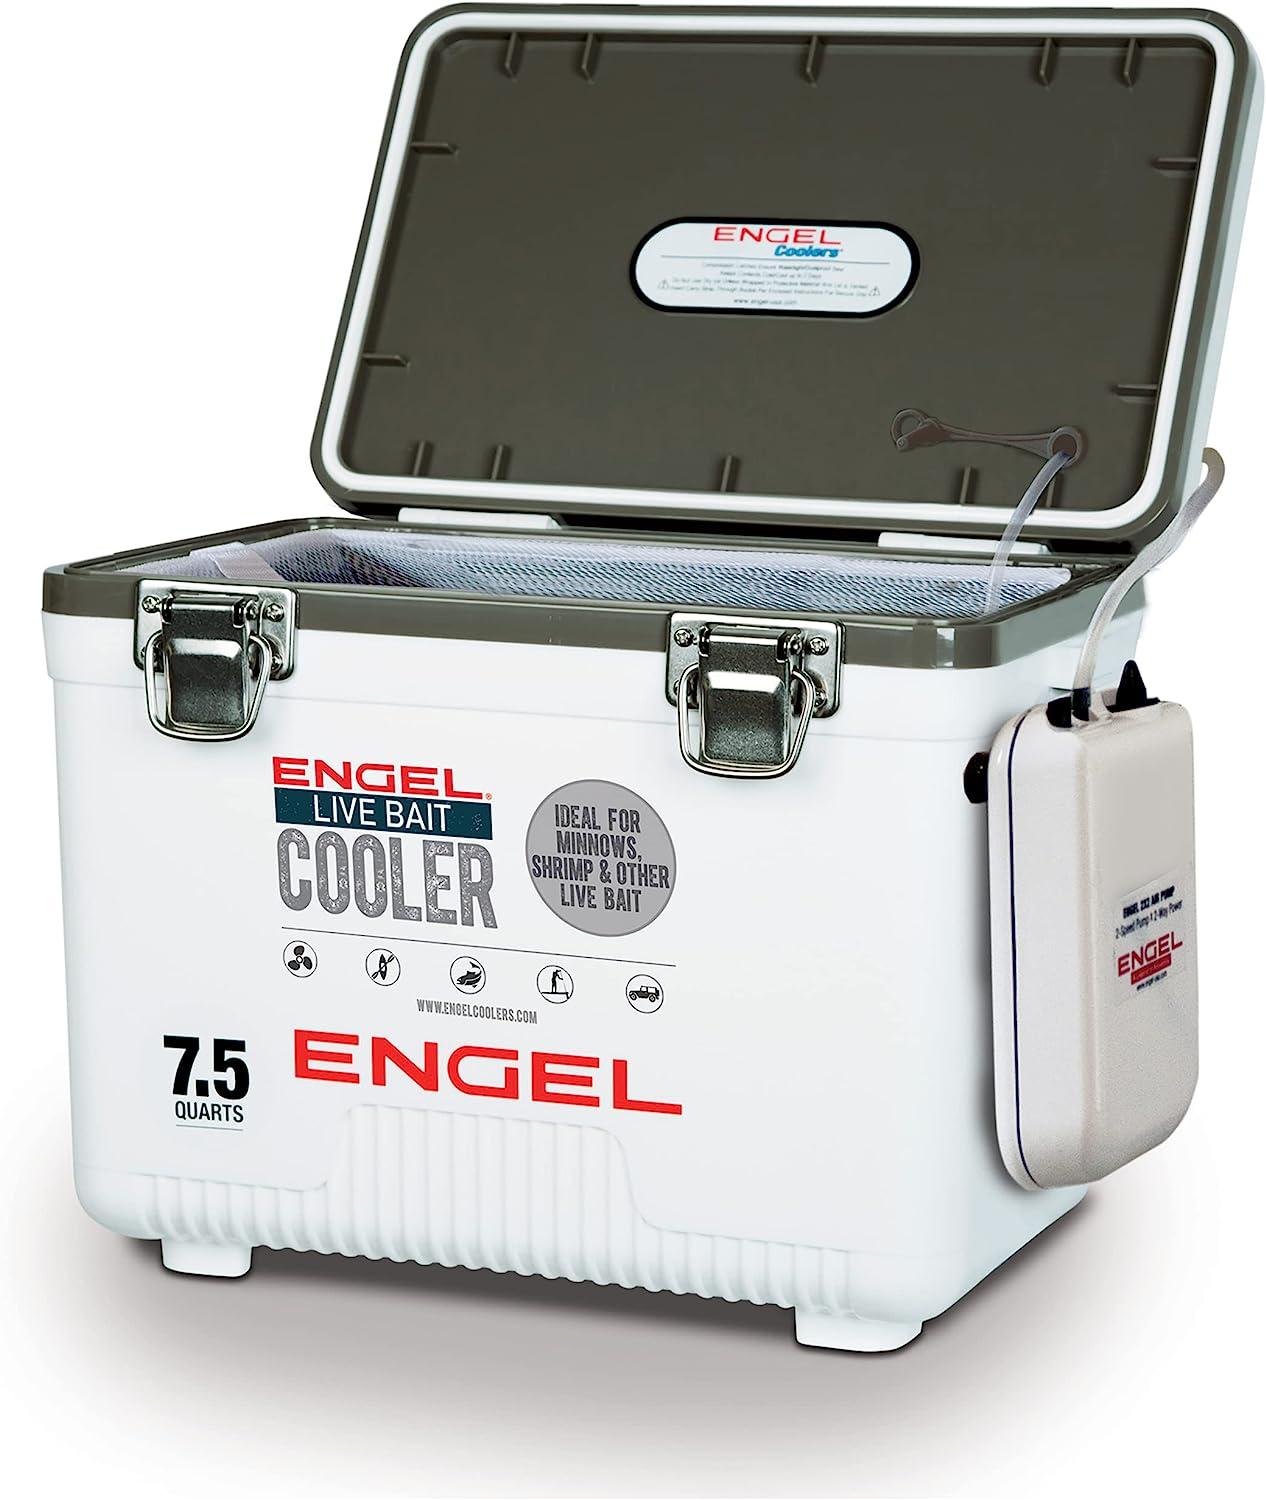 Live Bait Aerators – Engel Coolers